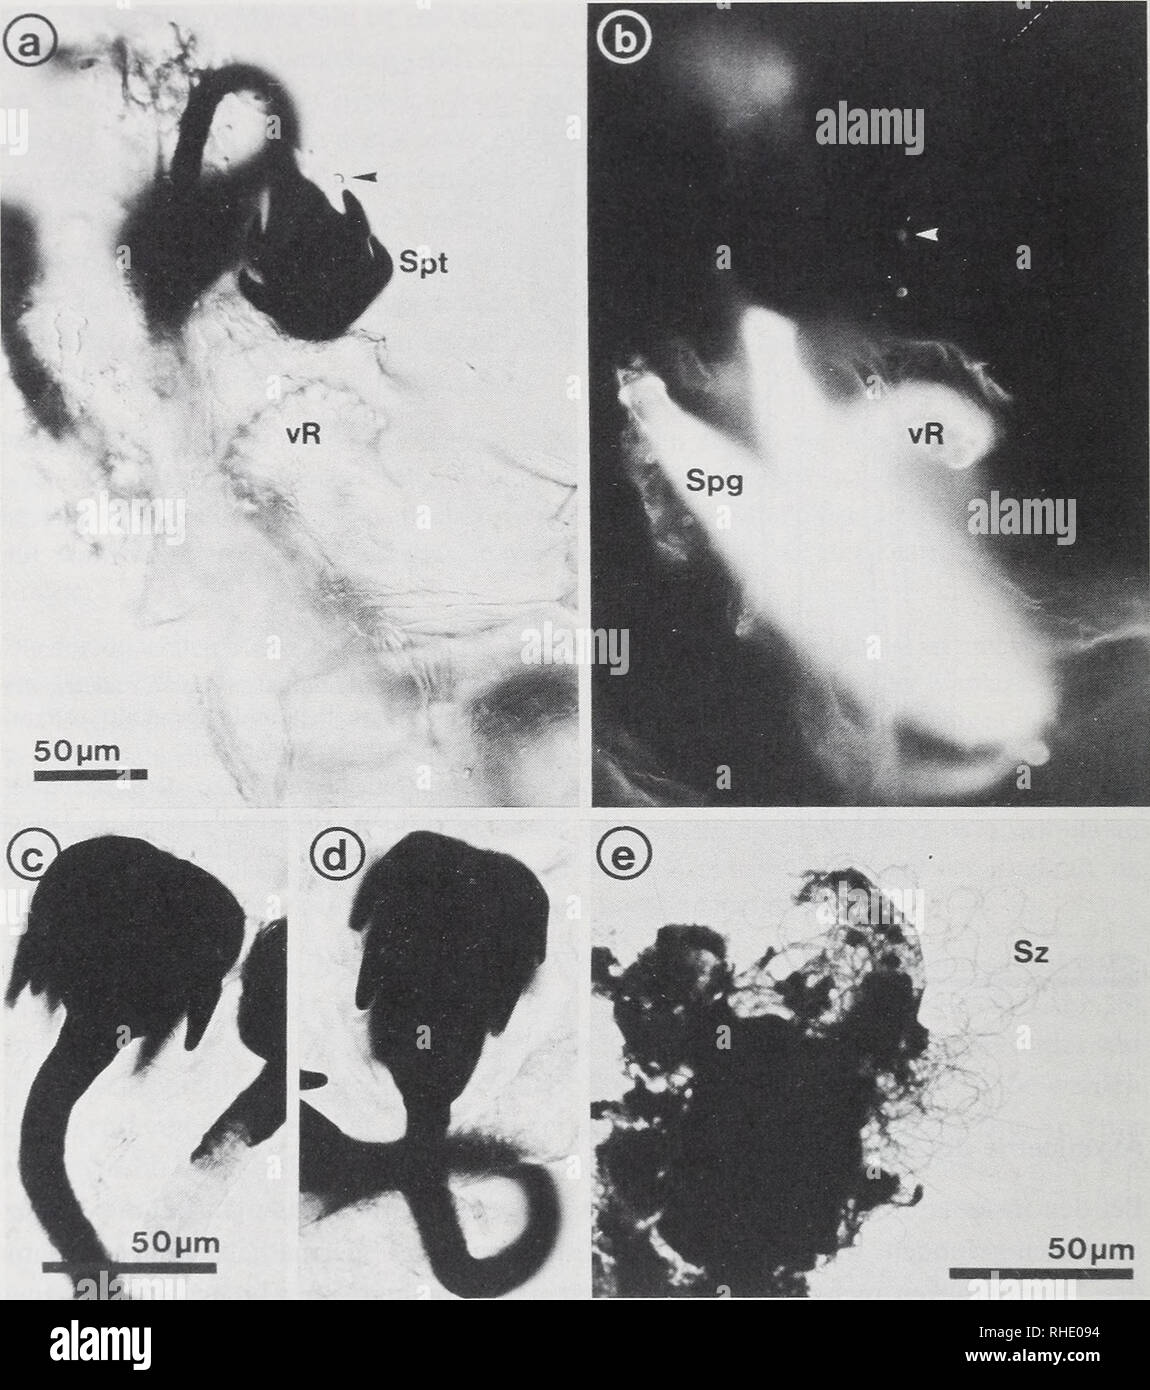 . Bonner zoologische Monographien. Zoology. 36. Abb.18: Spermatheken von C. whitei. (a) Totalpräparat, etwas mazeriert; (b) dasselbe Präparat unter UV- Anregung; (c—d) Nativpräparate, Spermathekenform rund bis birnenförmig; (e) Quetschpräparat, Hämatoxilin-Fuchsin. Spg: Spermathekengänge, Spt: Spermathek, Sz: Spermatozoen, vR: ventrales Receptaculum, Pfeil: Drü- senendapparat. Morphologie der Spermatheken Die Spermatheken haben eine runde bis birnenförmige Gestalt, bei einem Durchmesser von ca. 45—50 ßm und einer Höhe von ca. 60 lum (Abb.l7, 18a,c,d). Proximal verjüngen sie sich fast übergangs Stock Photo